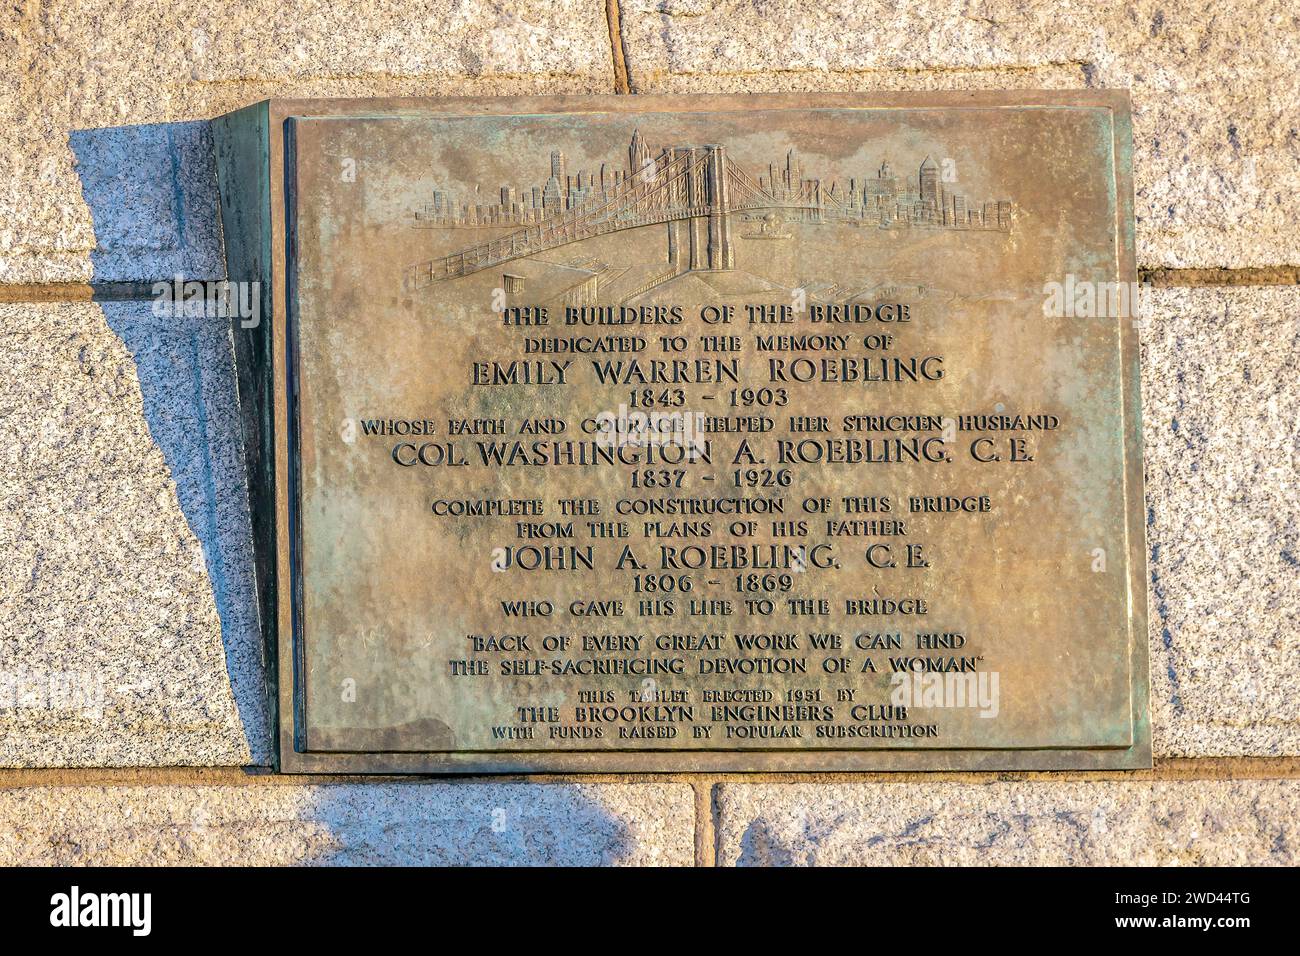 NEW YORK, USA – 9. MÄRZ 2020: Beschreibende Gedenktafel an der Brooklyn Bridge, die dem Gedenken an Emily Warren Roebling gewidmet ist, die ihrem Mann half. Stockfoto